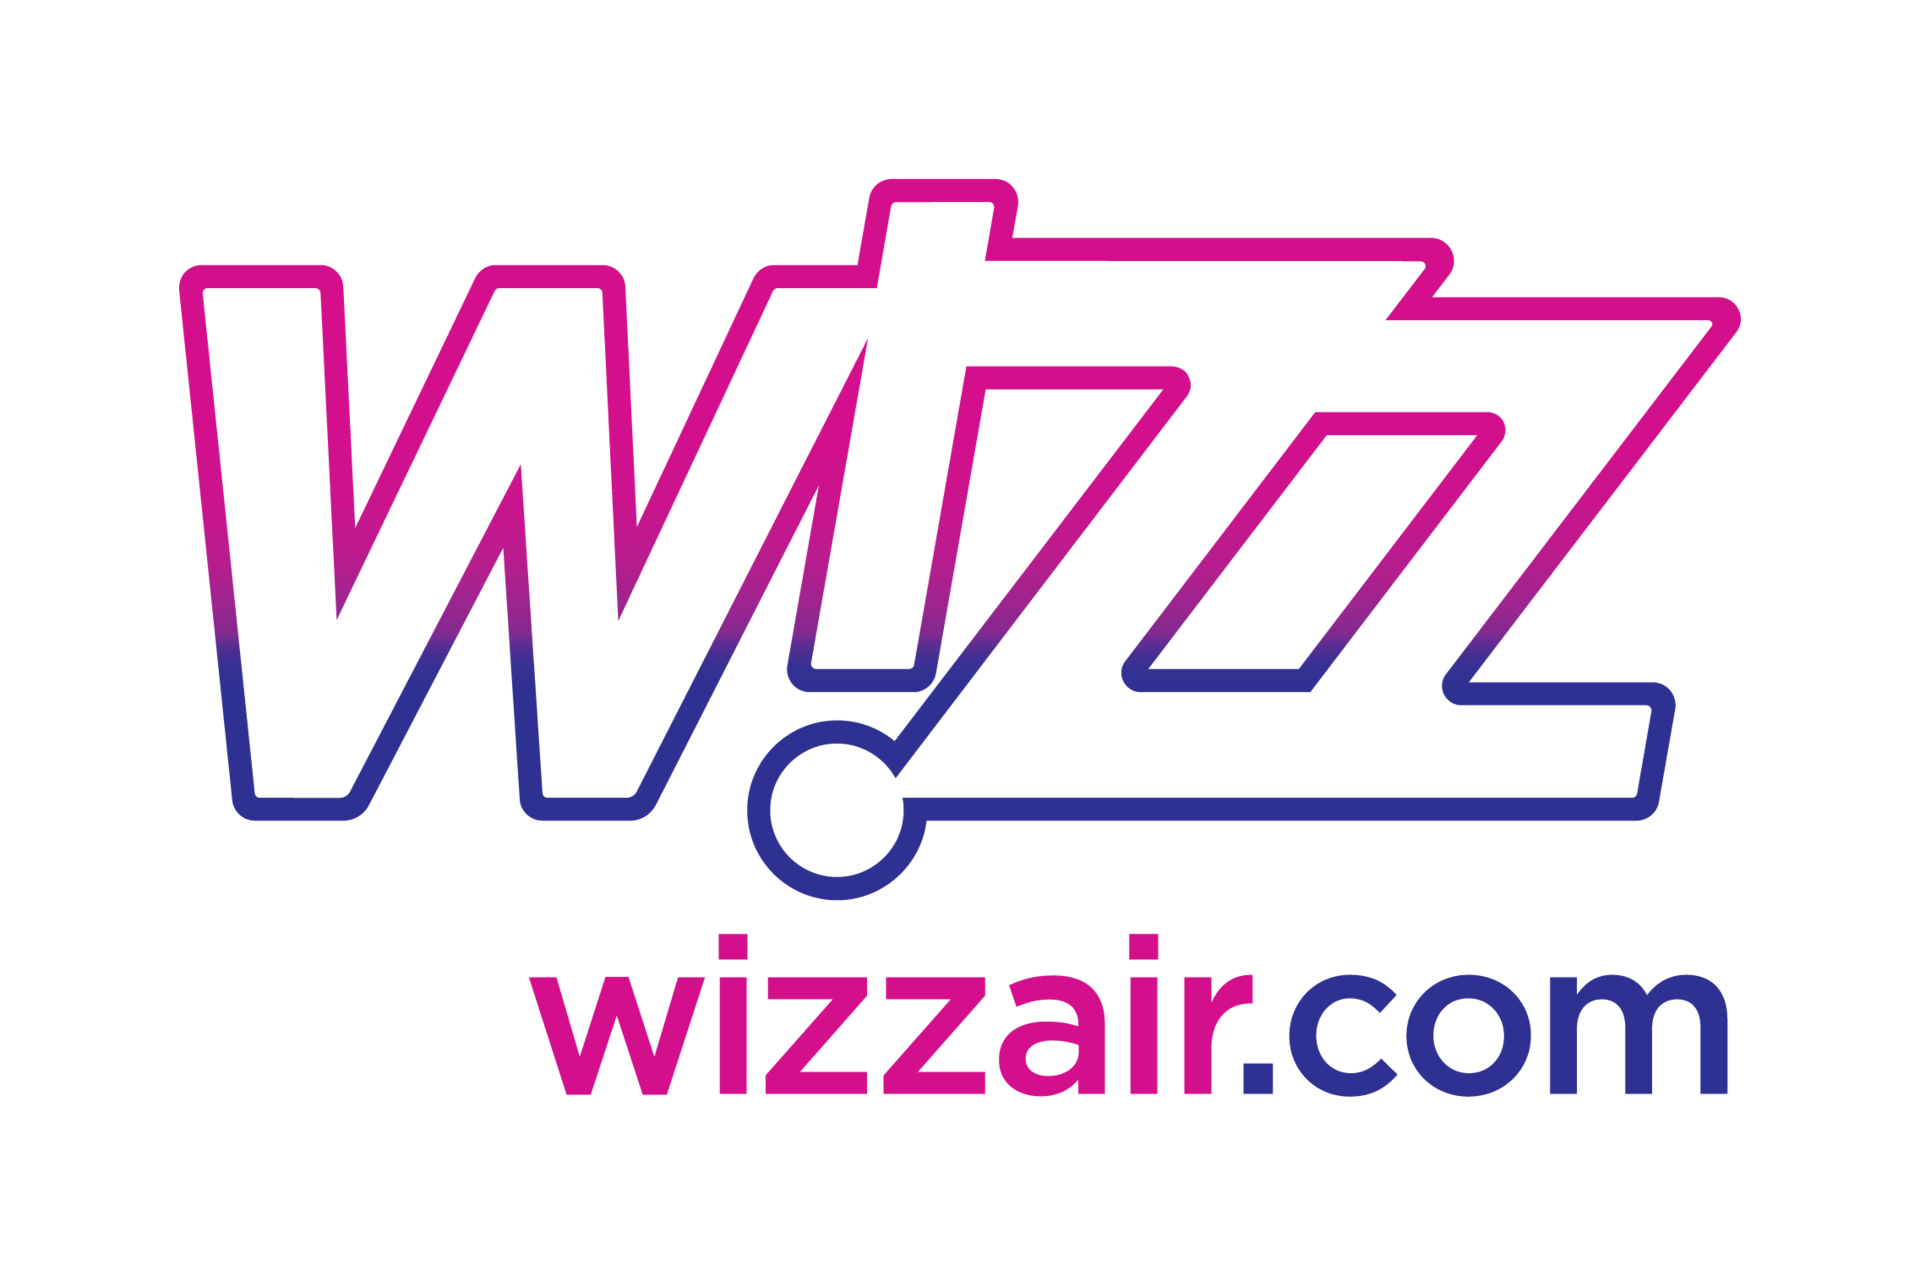 Travelask com. Wizz лого. Wizz Air logo. Авиакомпании значки Wizz Air. Wizzair logo прозрачный.